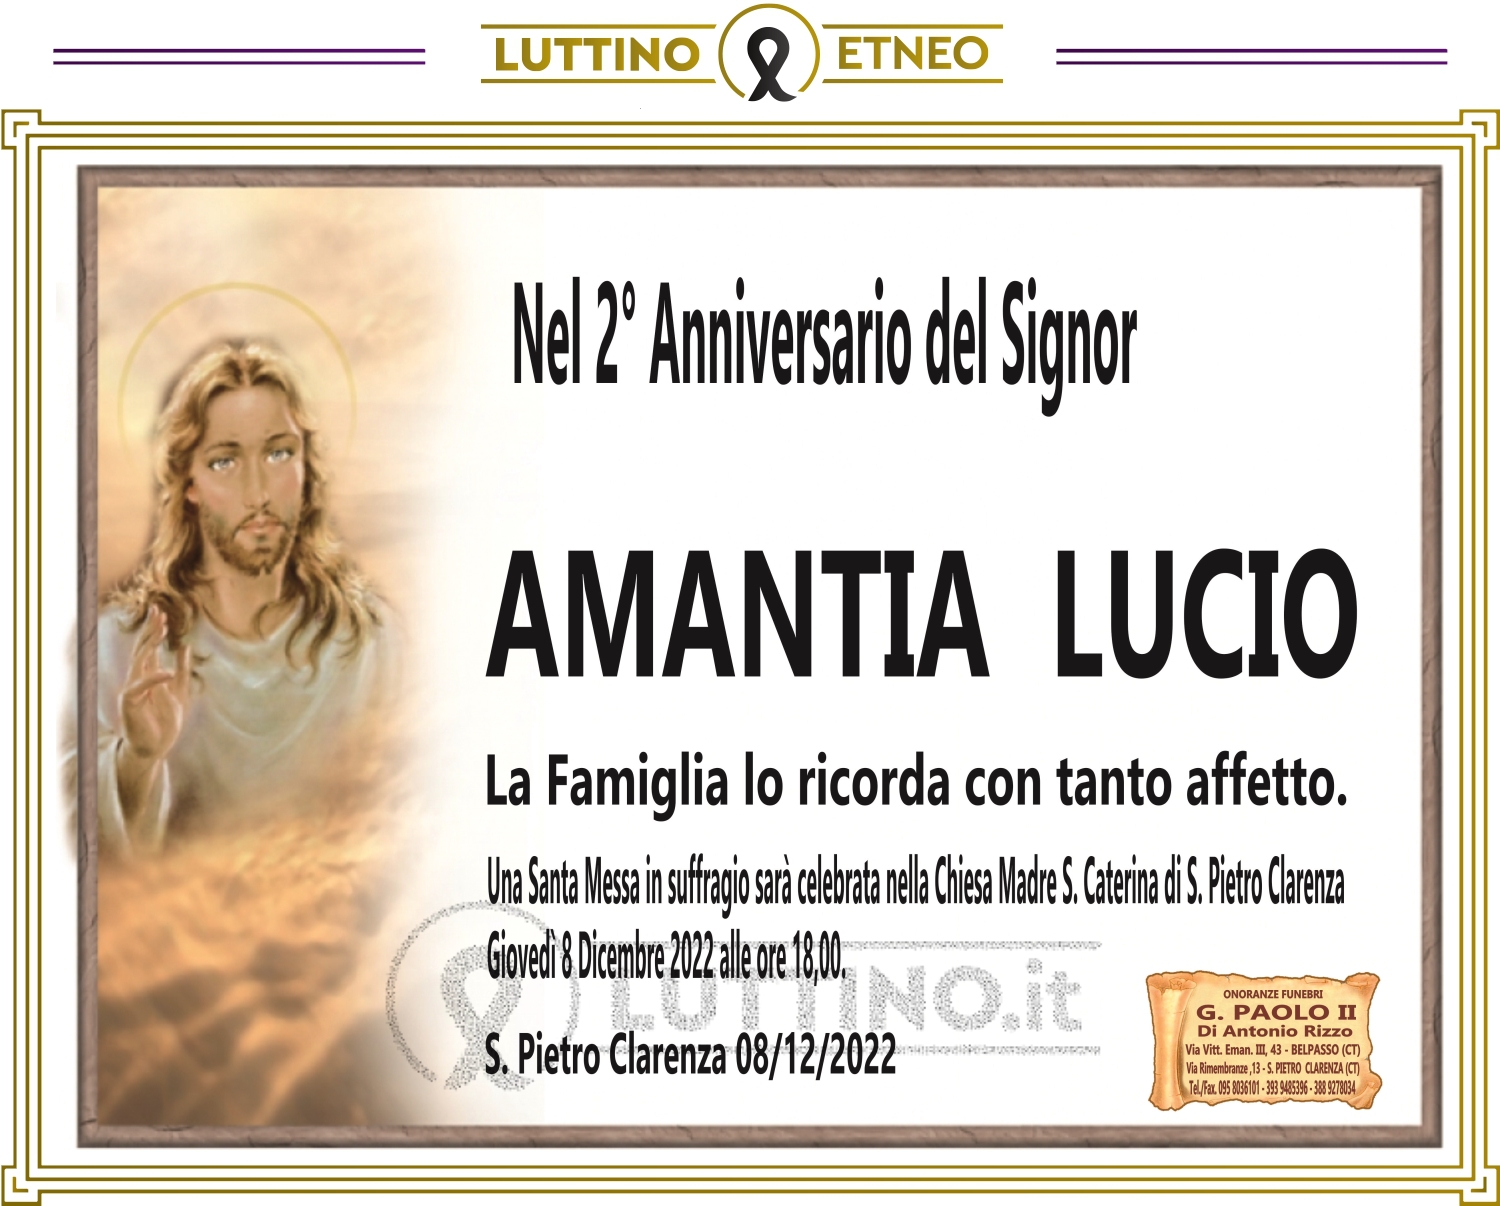 Lucio Amantia